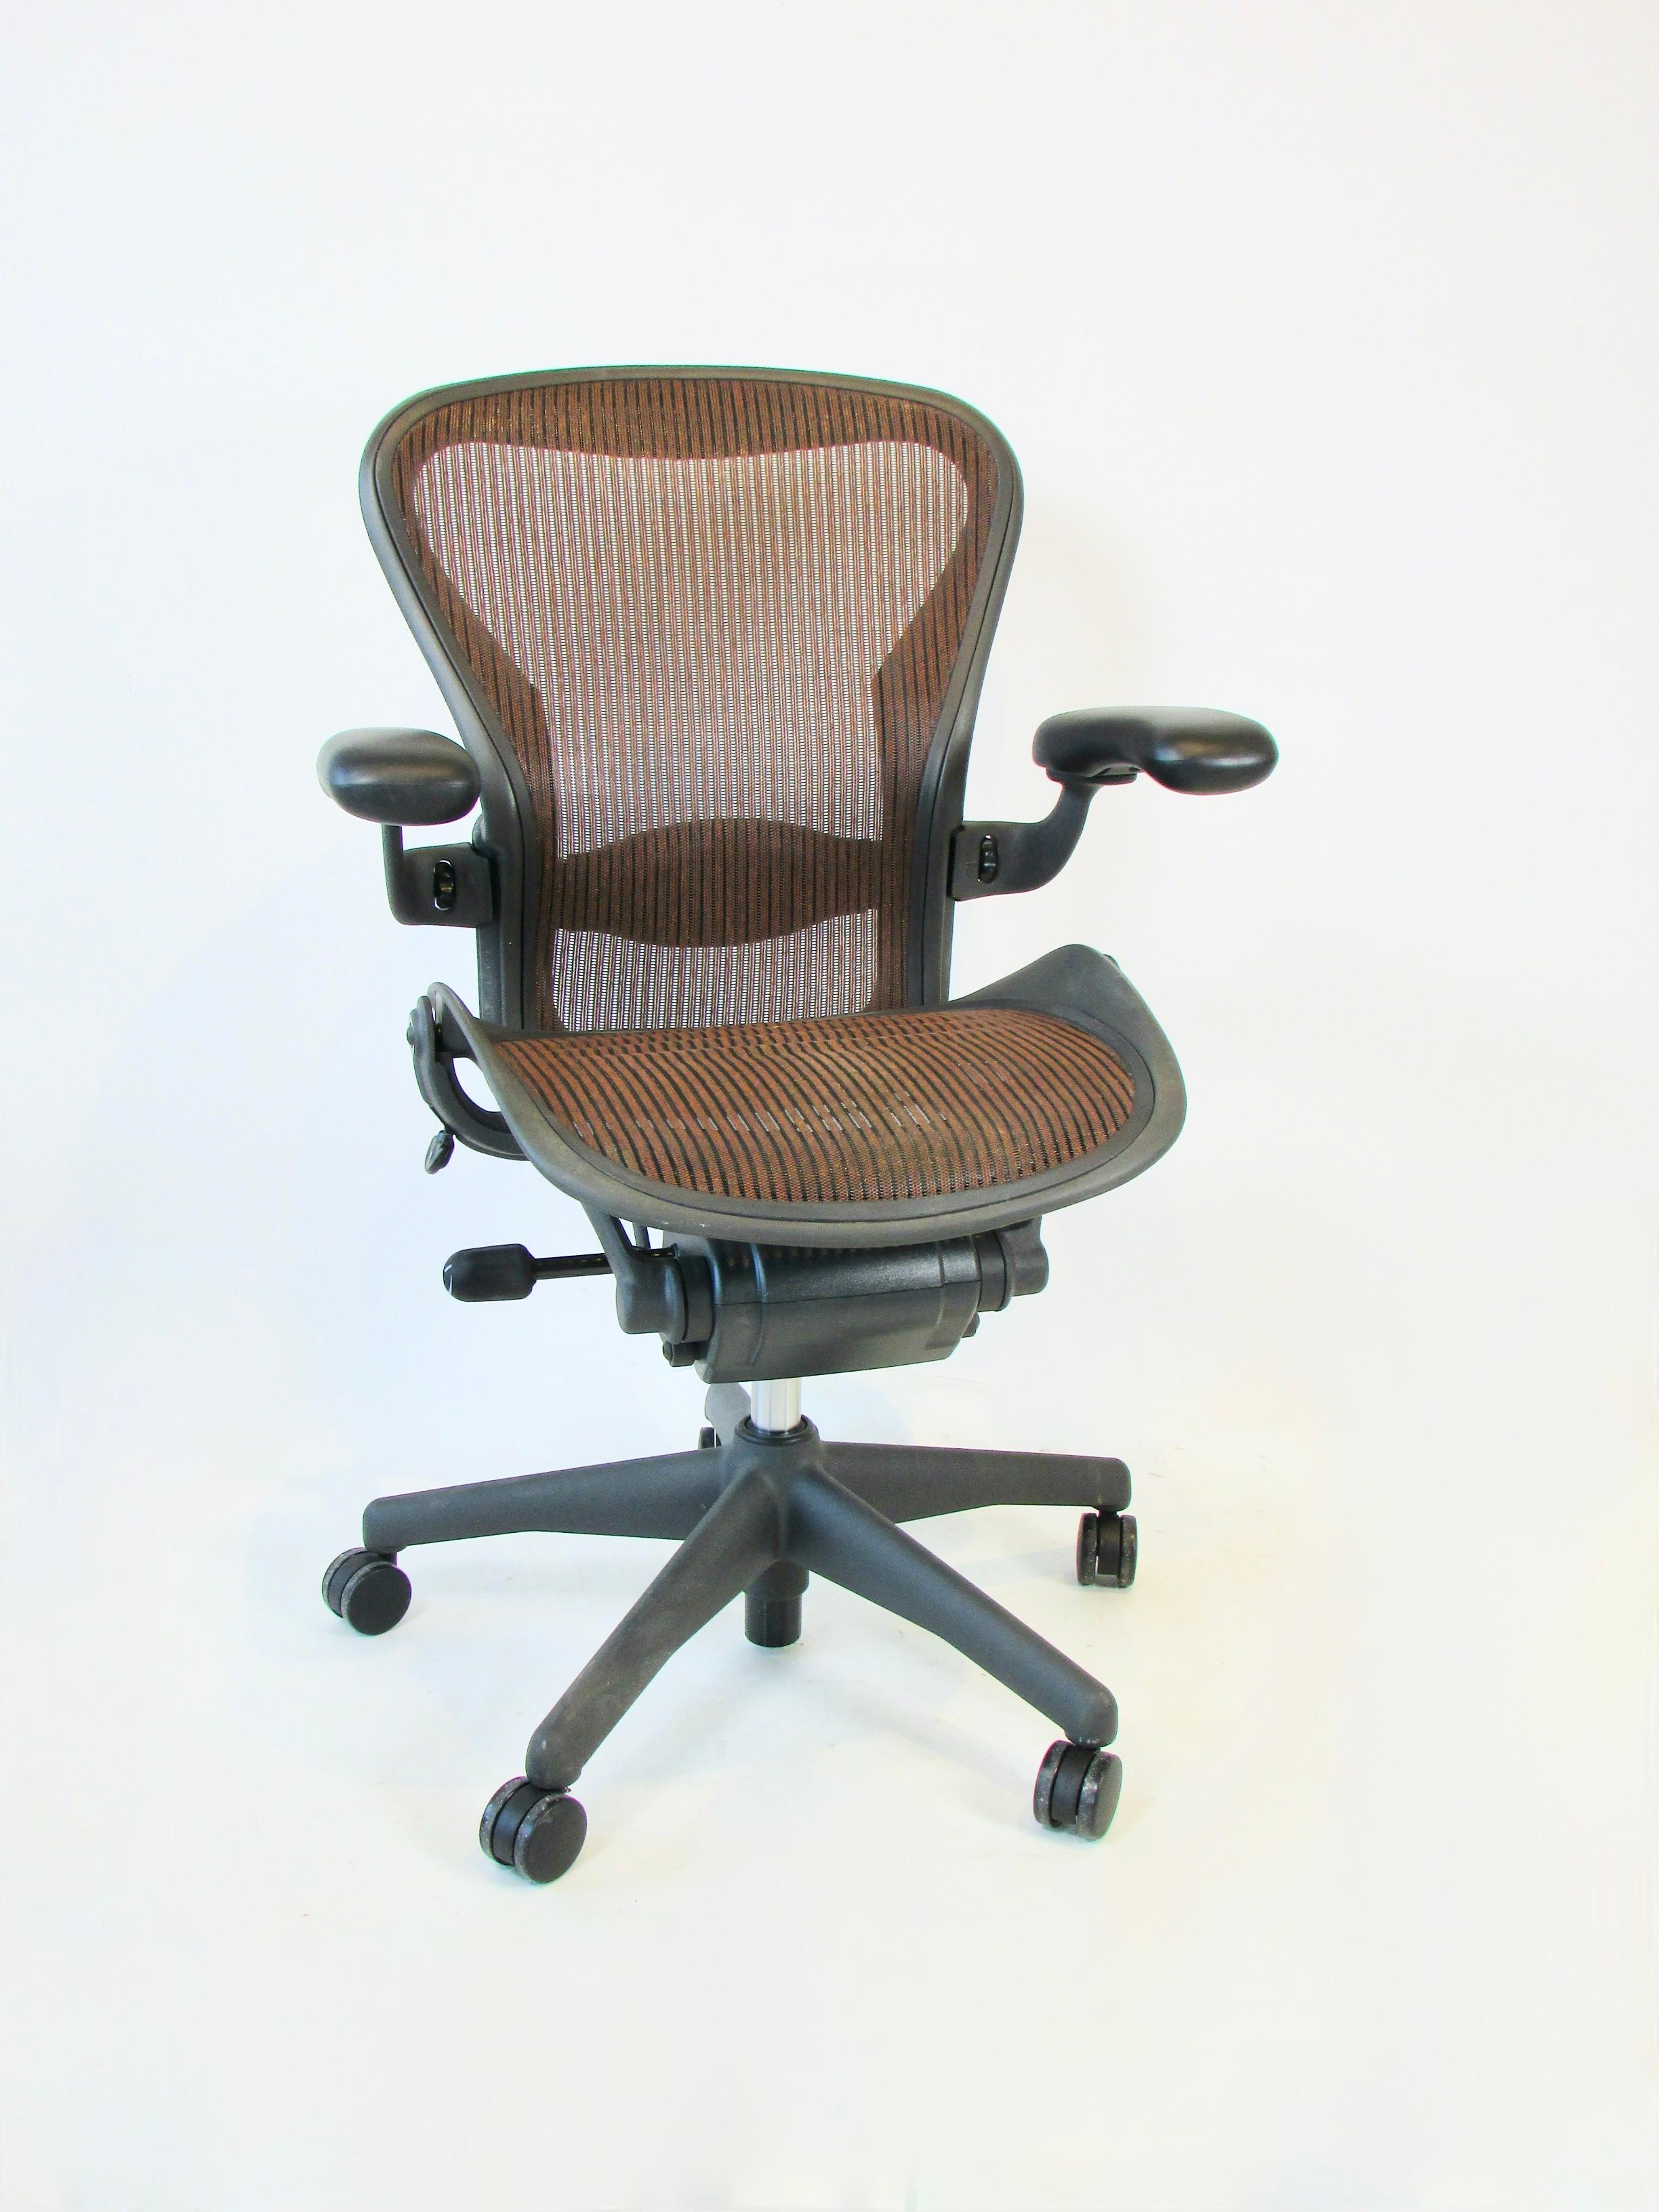 Entworfen von Bill Stumpf und Don Chadwick für Herman Miller. Der Aeron-Stuhl revolutionierte mit seinem frischen Design das Sitzen im Büro. Pellicle-Federmaterial und eine patentierte Posture Fit-Rückenstütze sorgen für eine ideale Sitzposition.